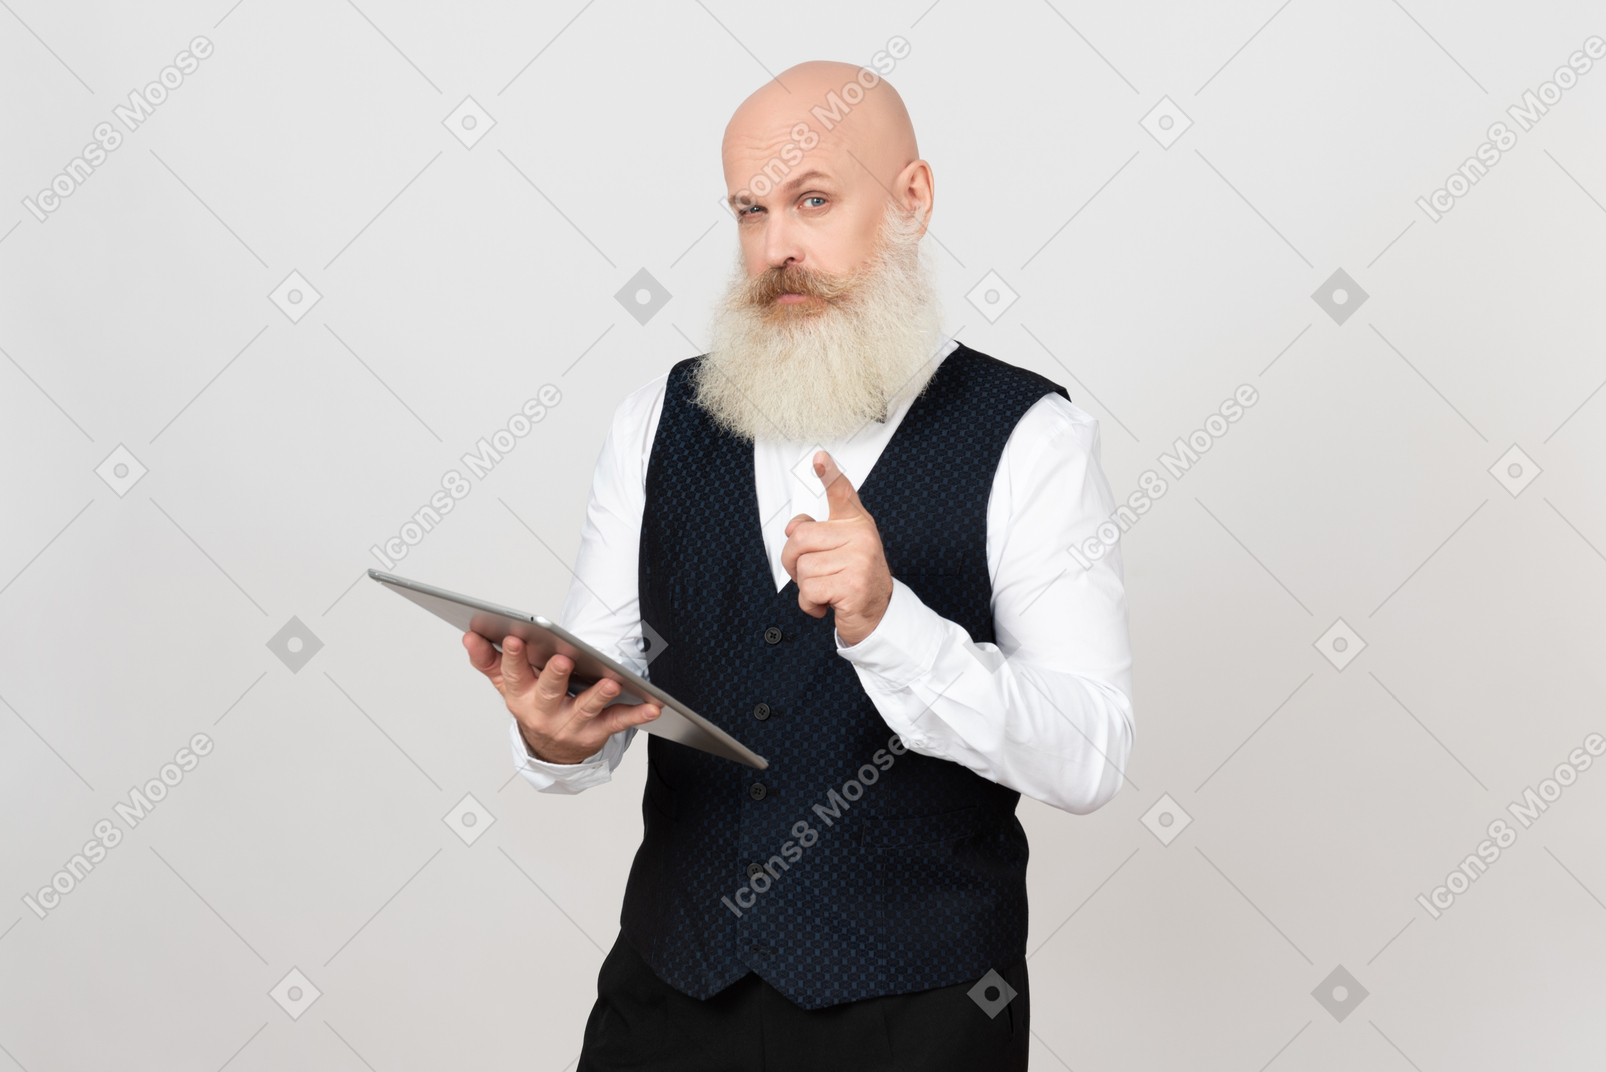 Hombre de edad sosteniendo la tableta y señalando algo